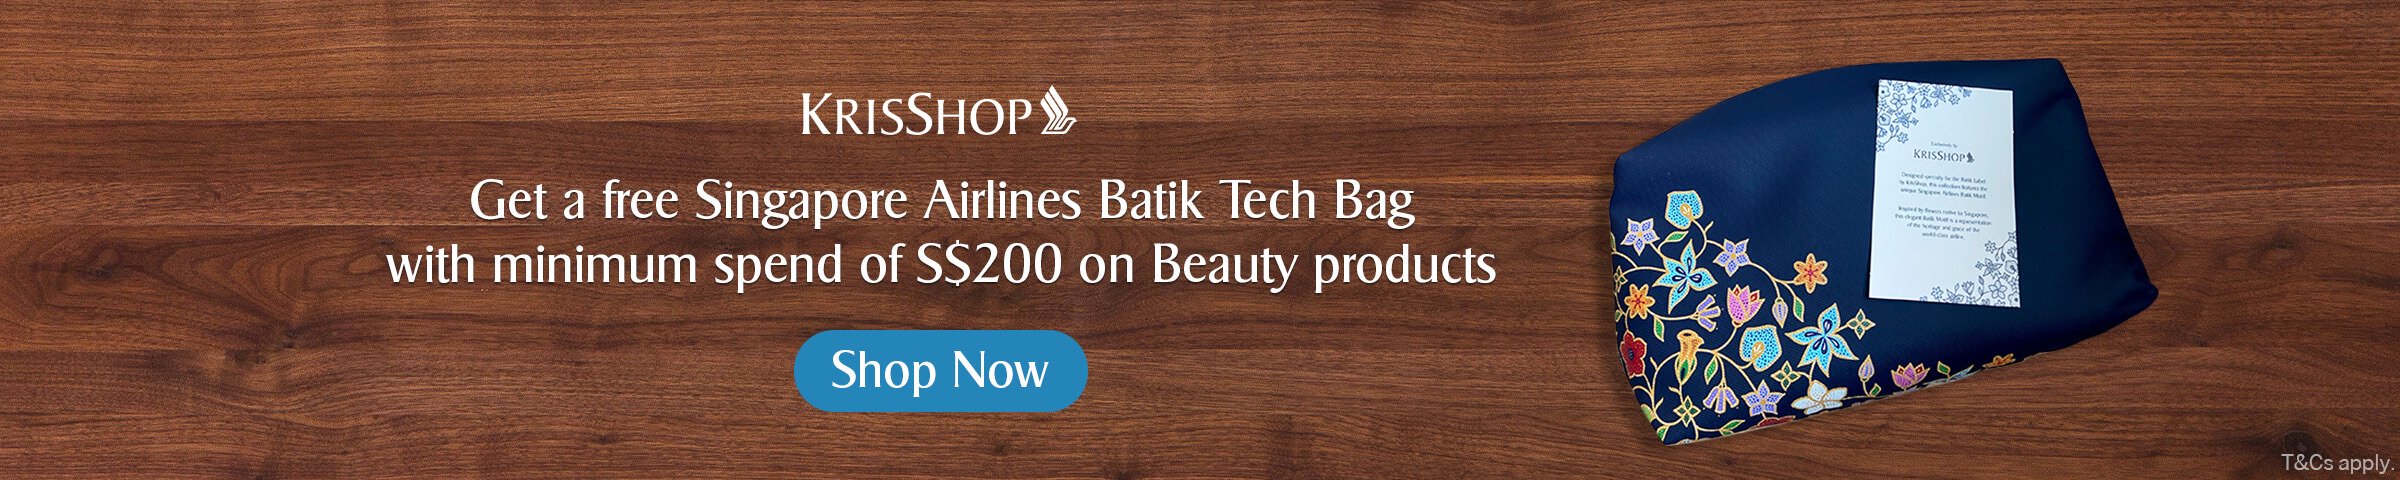 KrisShopper Batik Tech Bag - GWP